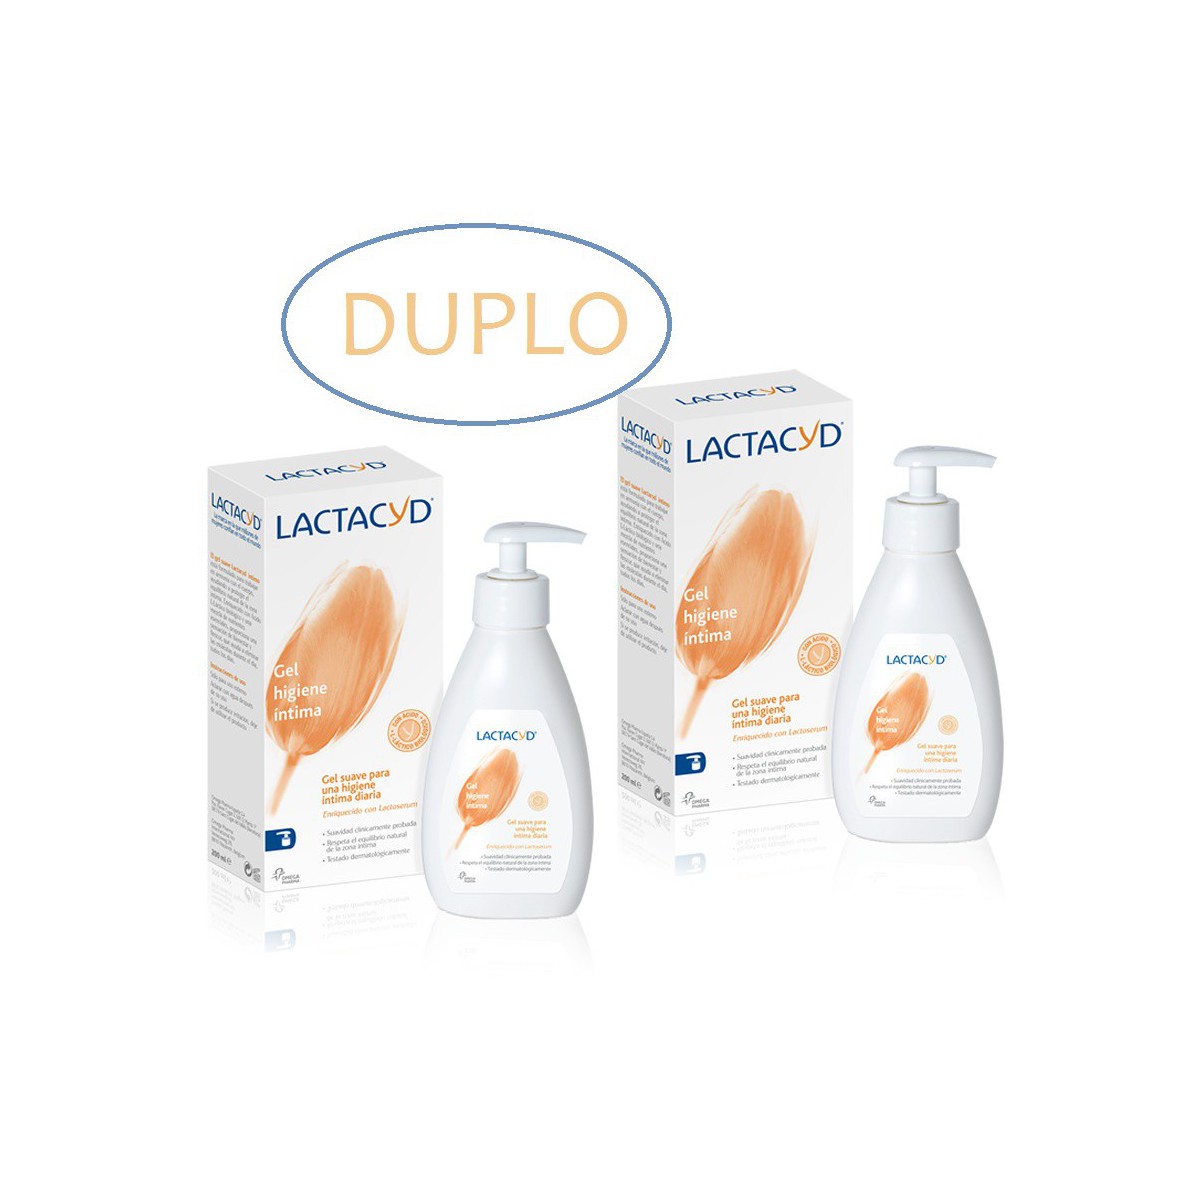 Duplo Lactacyd gel higiene intima 50% segunda unidad